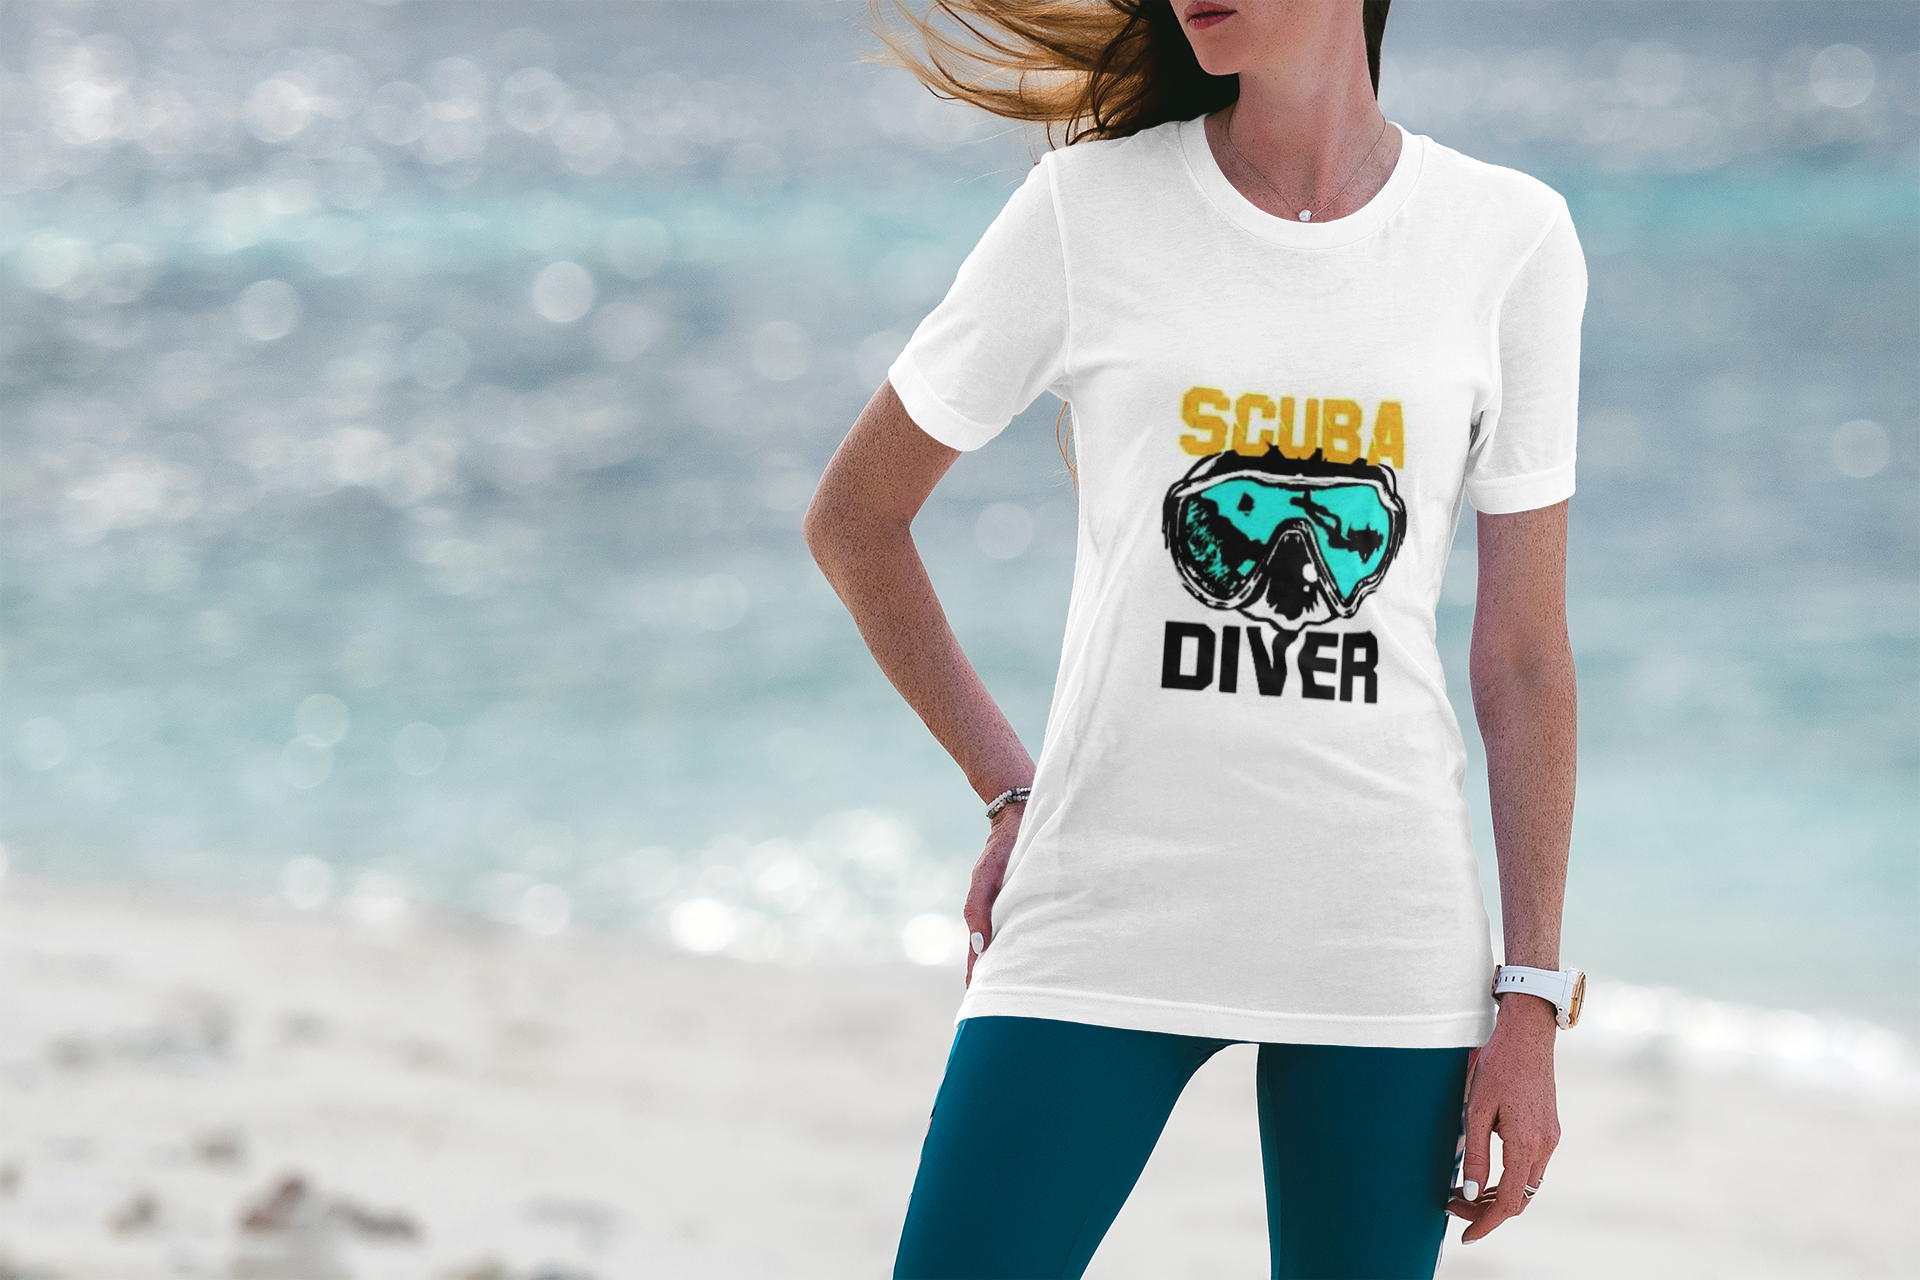 dive shirts diving t shirts scuba diving outfit scuba diving shirts